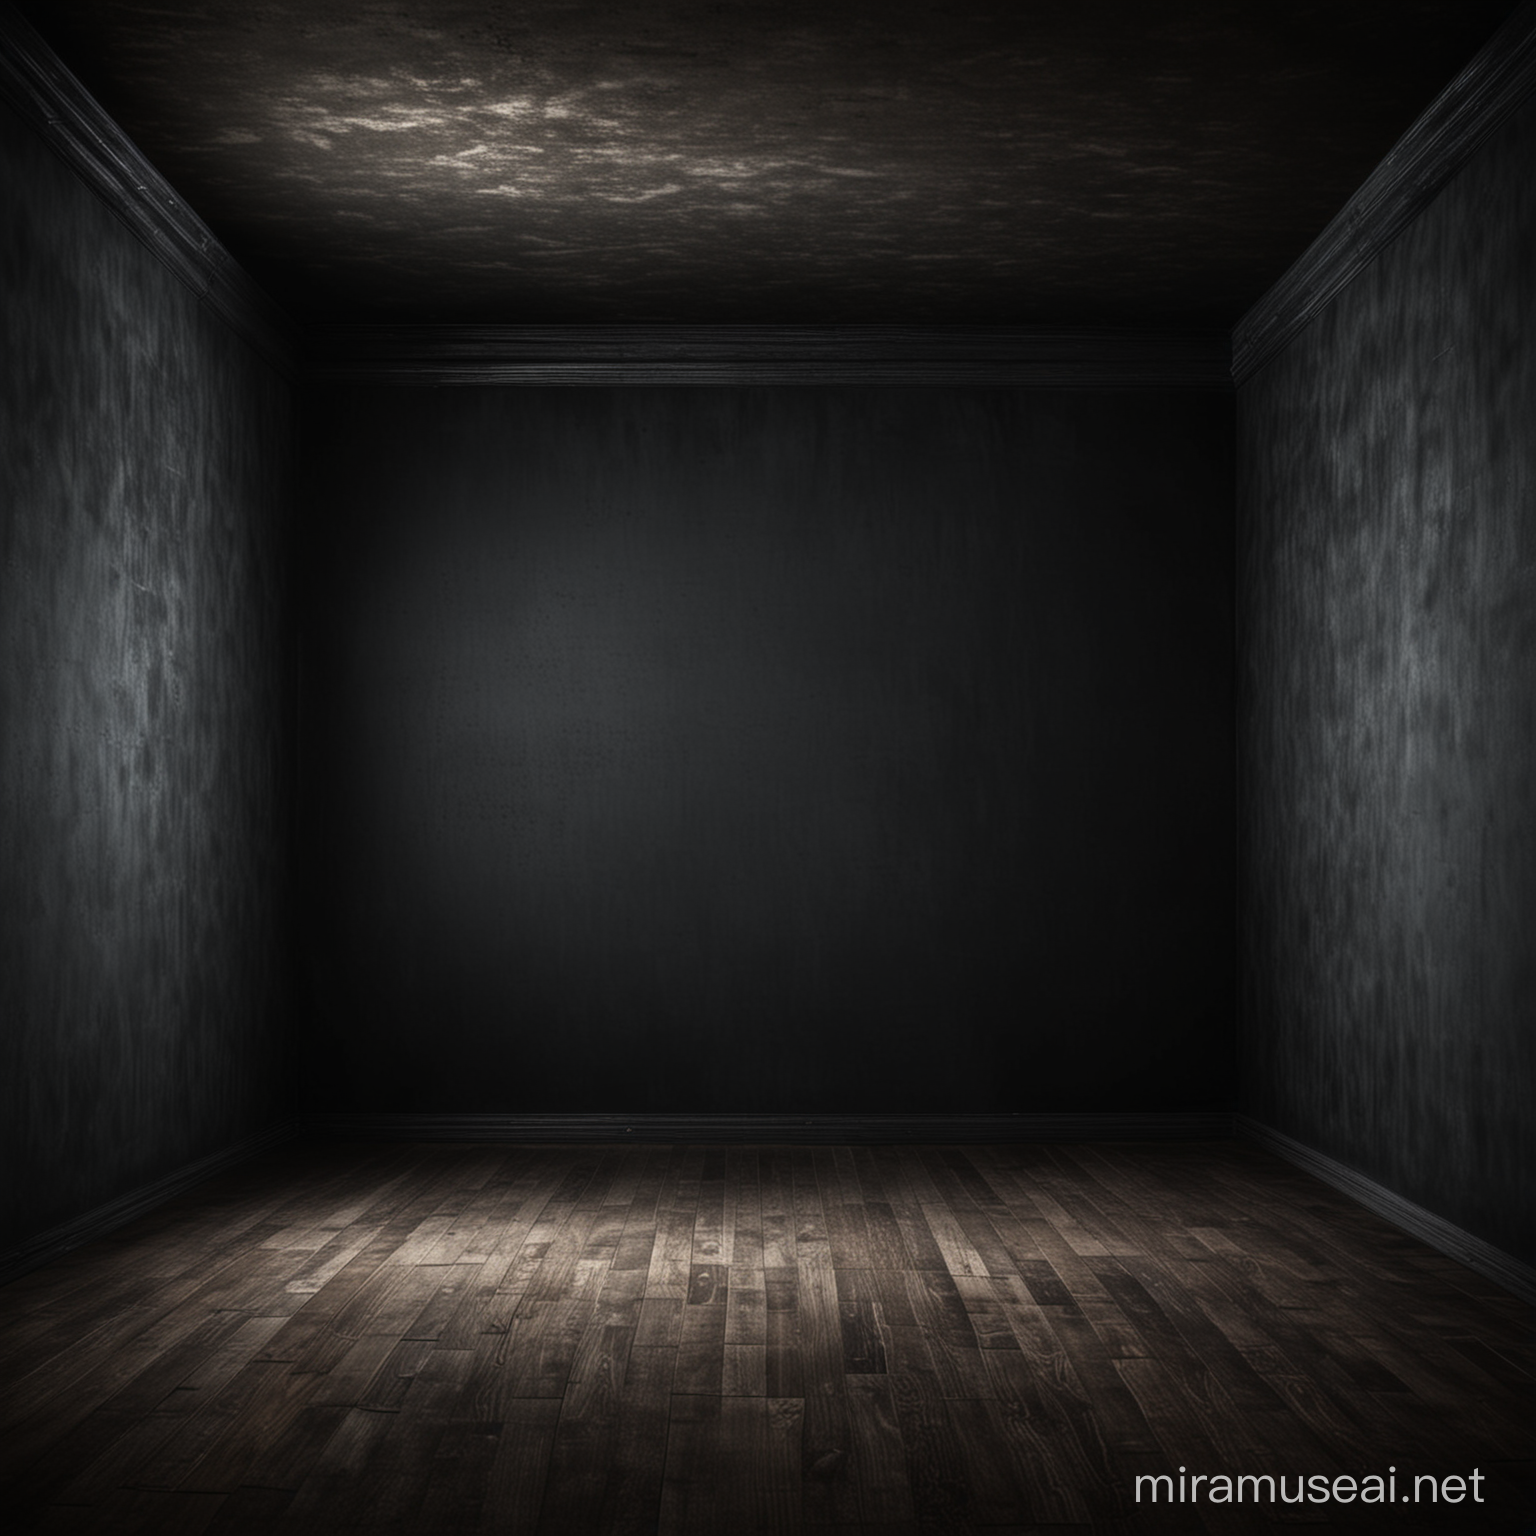 empty dark room frontal